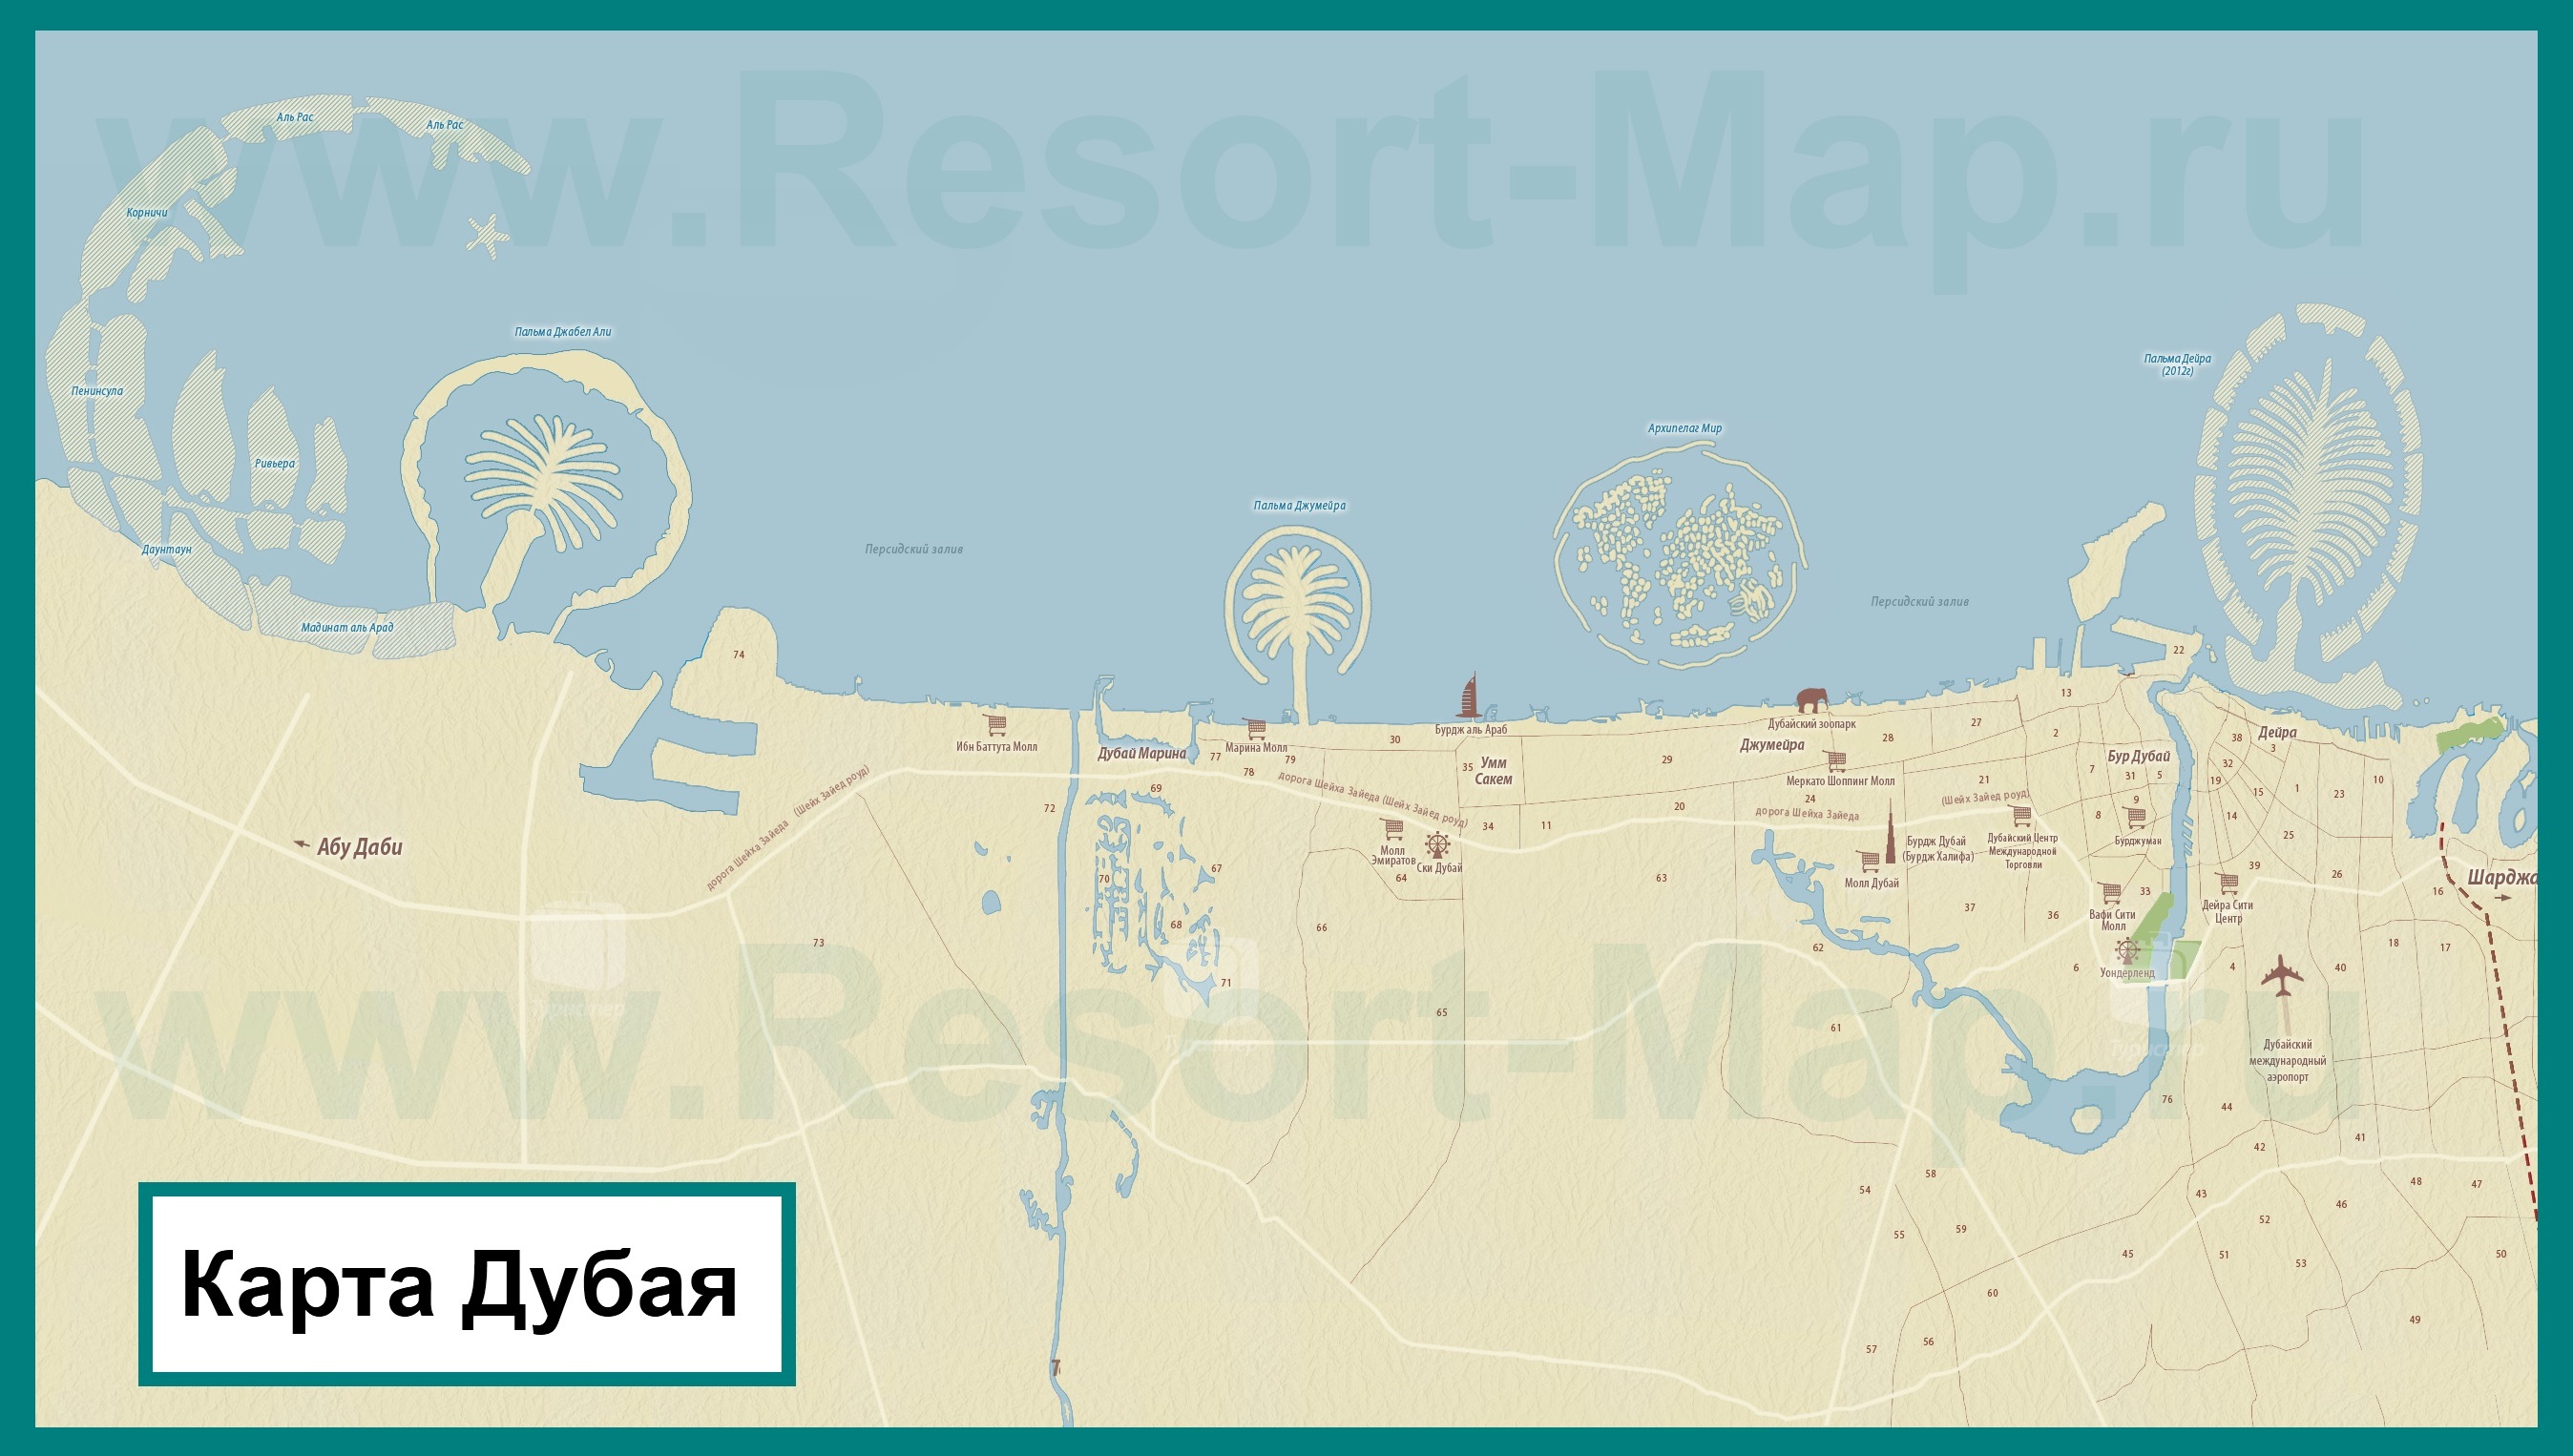 Карта Дубая (ОАЭ) на русском языке